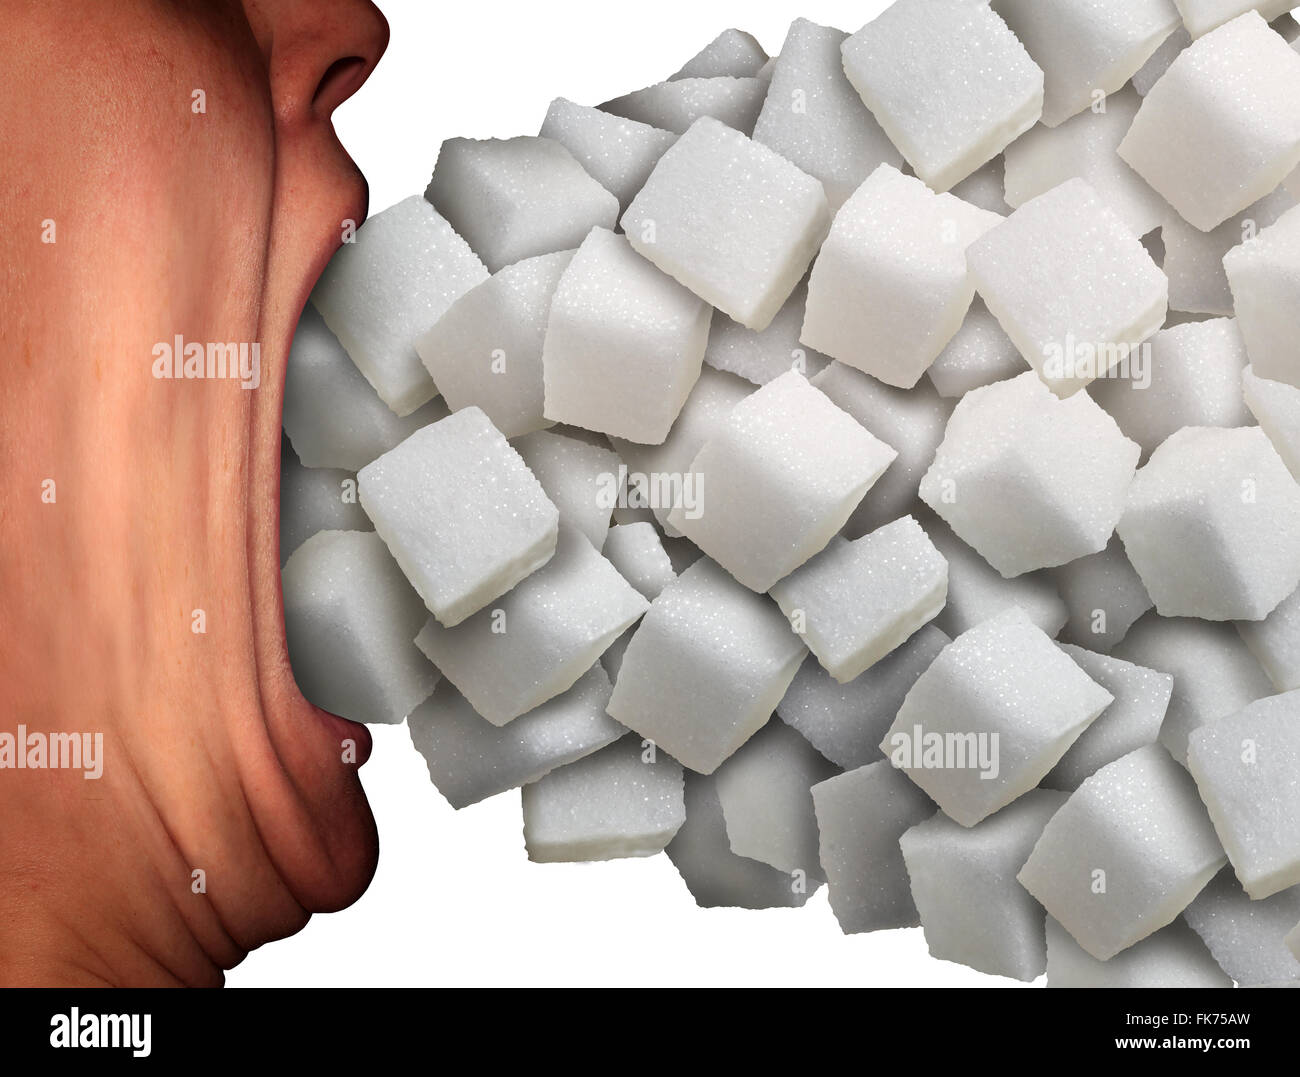 Zuviel Zucker medizinisches Konzept als eine Person mit einem weit geöffneten Mund essen eine große Gruppe von süßen granulierten raffinierten weißen Zuckerwürfel als Metapher für ungesunde Ernährung Gewohnheit oder Lebensmittel Zutat sucht. Stockfoto